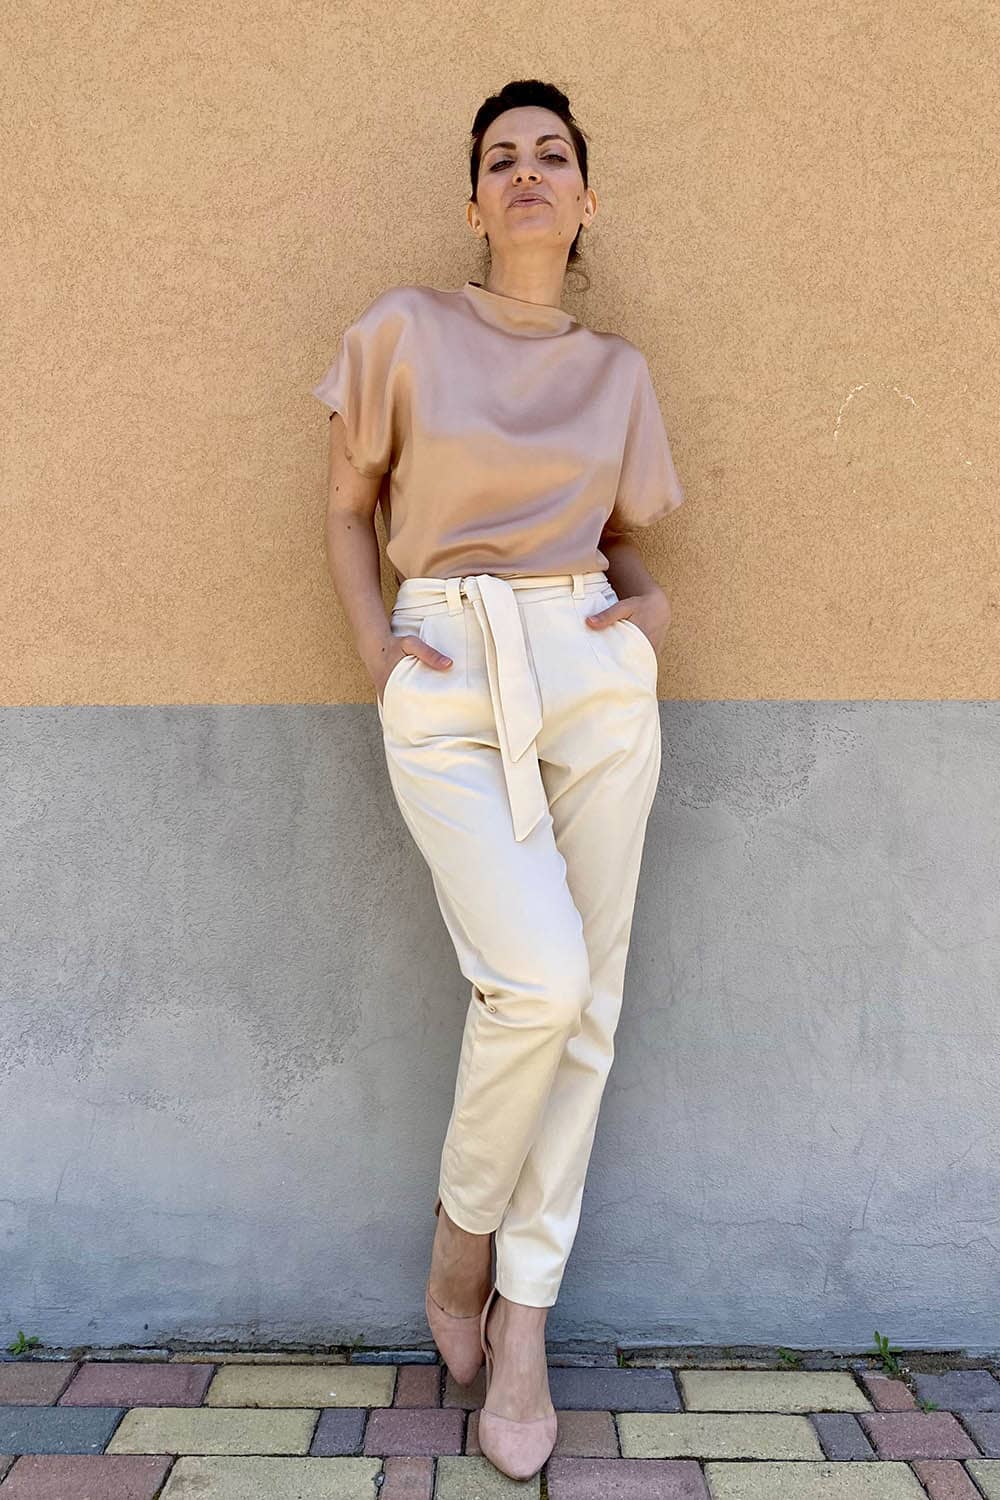 Flavia Amato indossa Pantalone Alessia cotone biologico brand malia lab moda sostenibile artigianale abbigliamento biologico sostenibile pantaloni sartoriali su misura pantaloni ecosostenibili donna